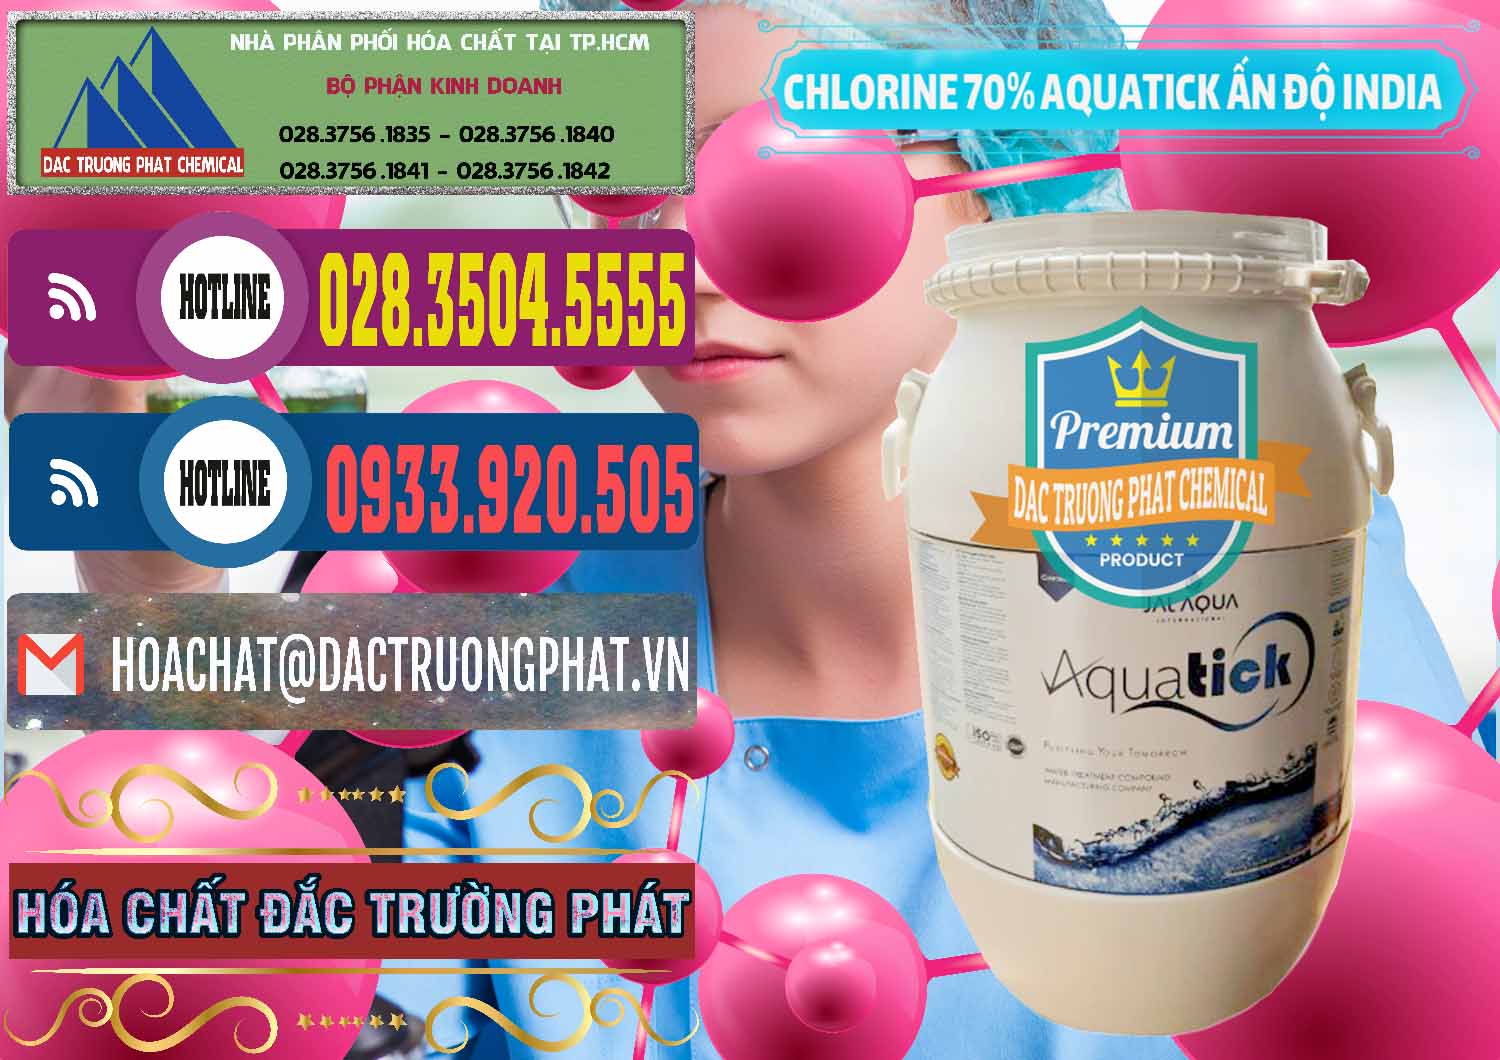 Công ty chuyên bán _ cung ứng Chlorine – Clorin 70% Aquatick Jal Aqua Ấn Độ India - 0215 - Đơn vị chuyên nhập khẩu và cung cấp hóa chất tại TP.HCM - muabanhoachat.com.vn